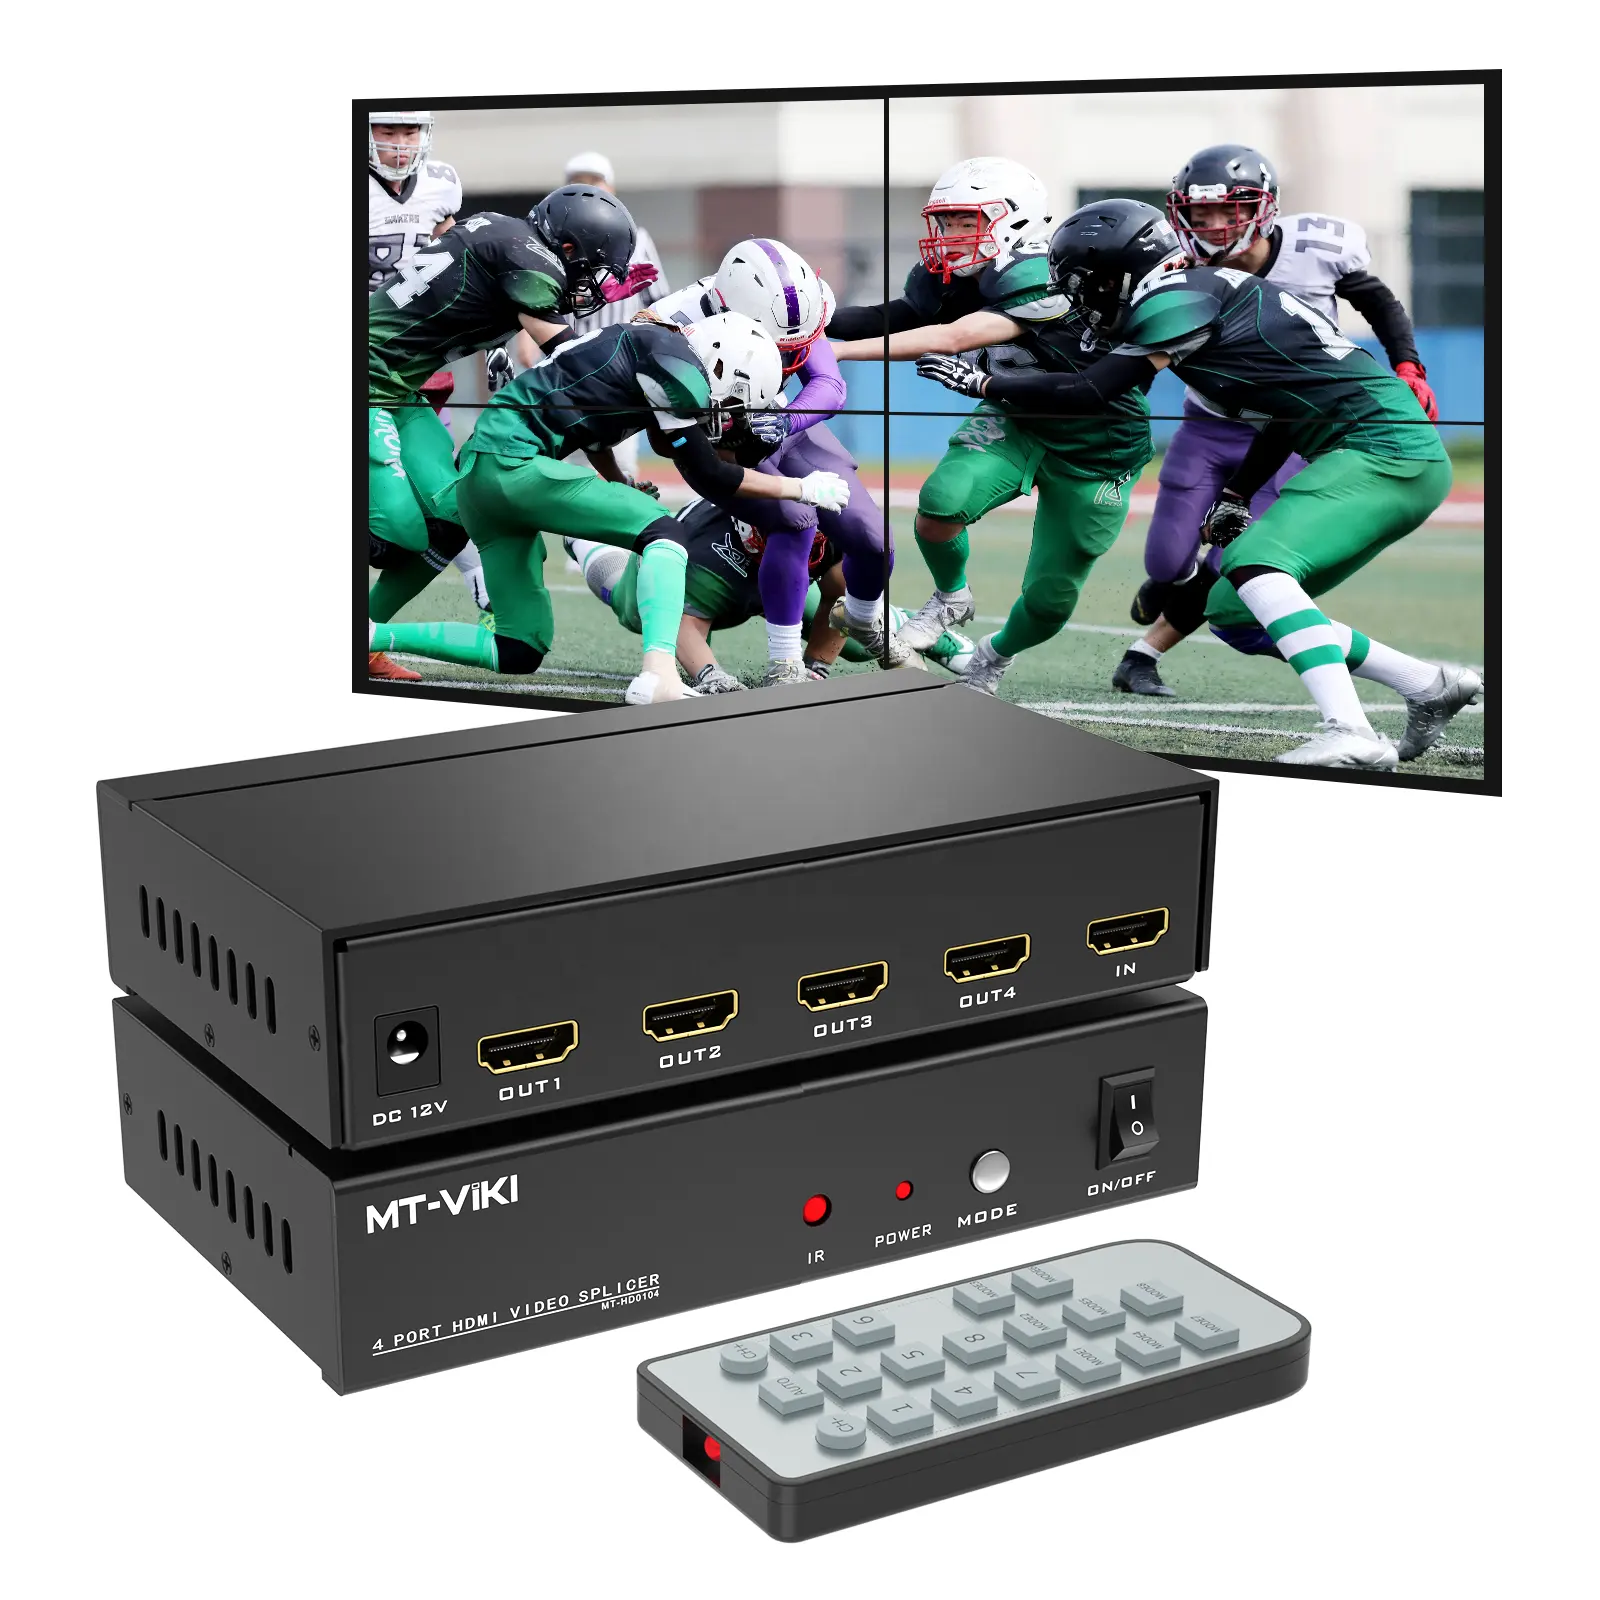 Contrôleur de mur vidéo HDMI 2x2 4K 30Hz, MT-VIKI 4 ports Multiviewer HDMI épissure de mur vidéo 1 entrée 4 sorties Contrôleur de mur vidéo